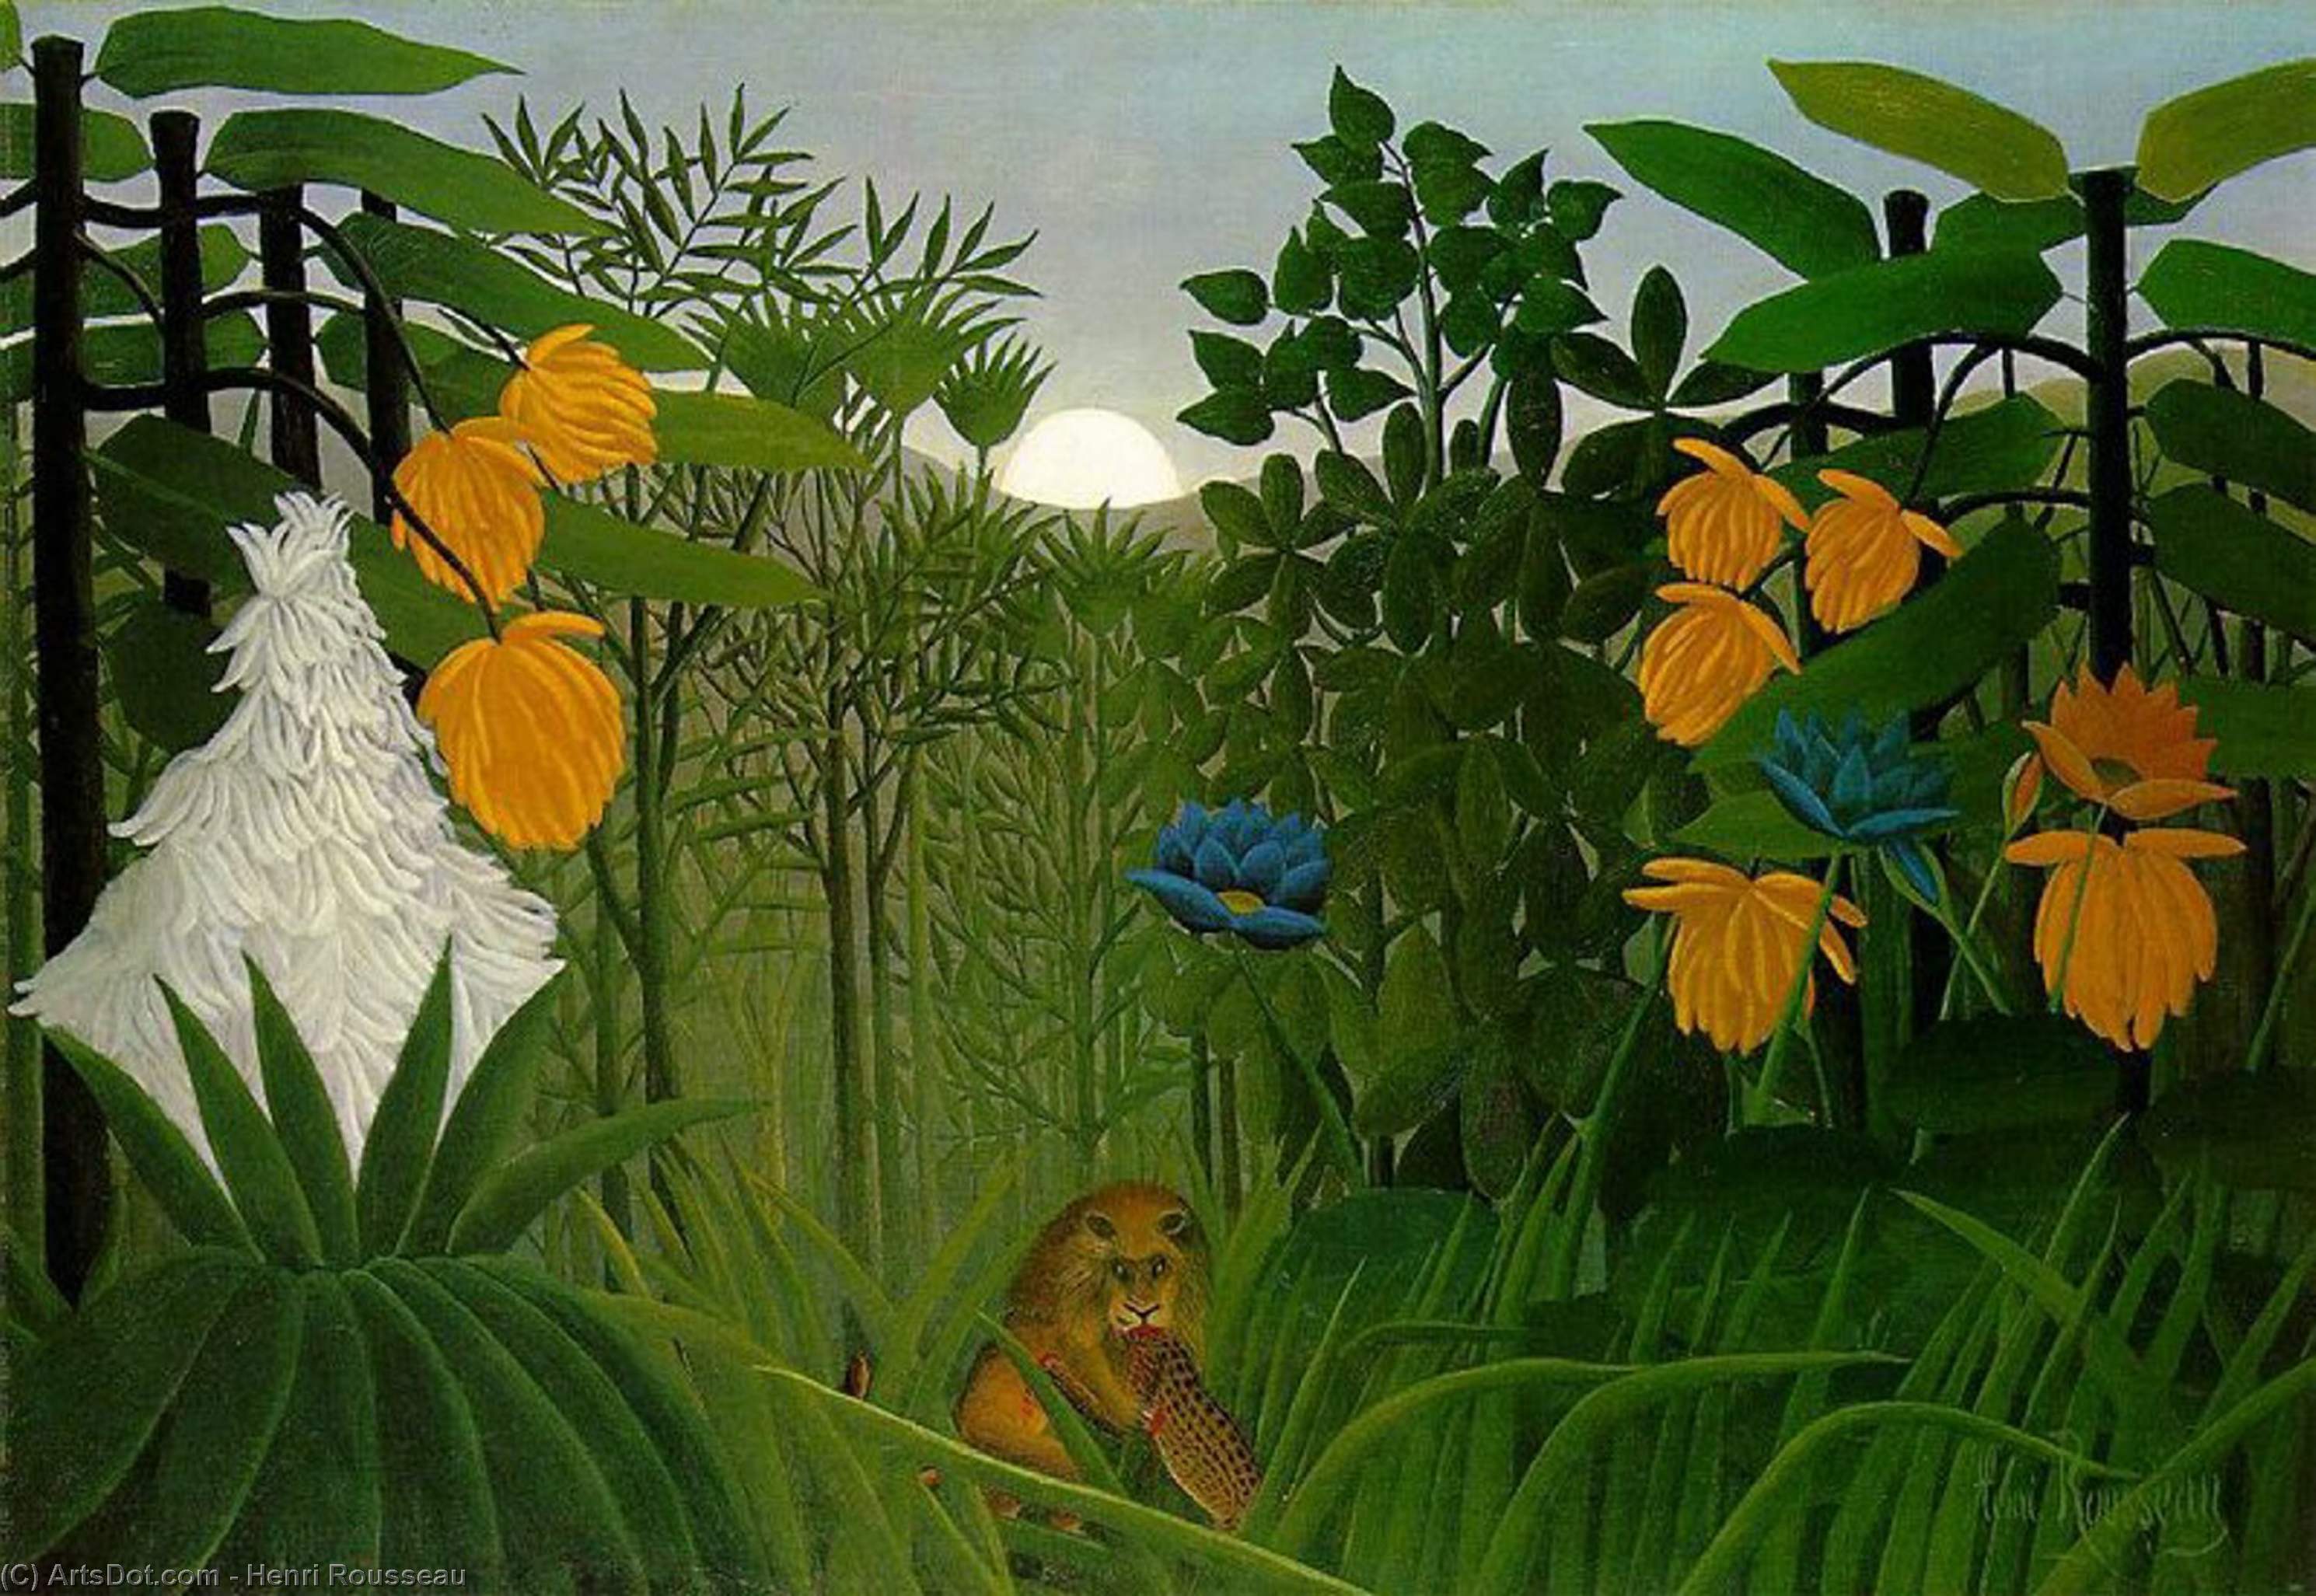 WikiOO.org - Encyclopedia of Fine Arts - Lukisan, Artwork Henri Julien Félix Rousseau (Le Douanier) - The repast of the lion, The